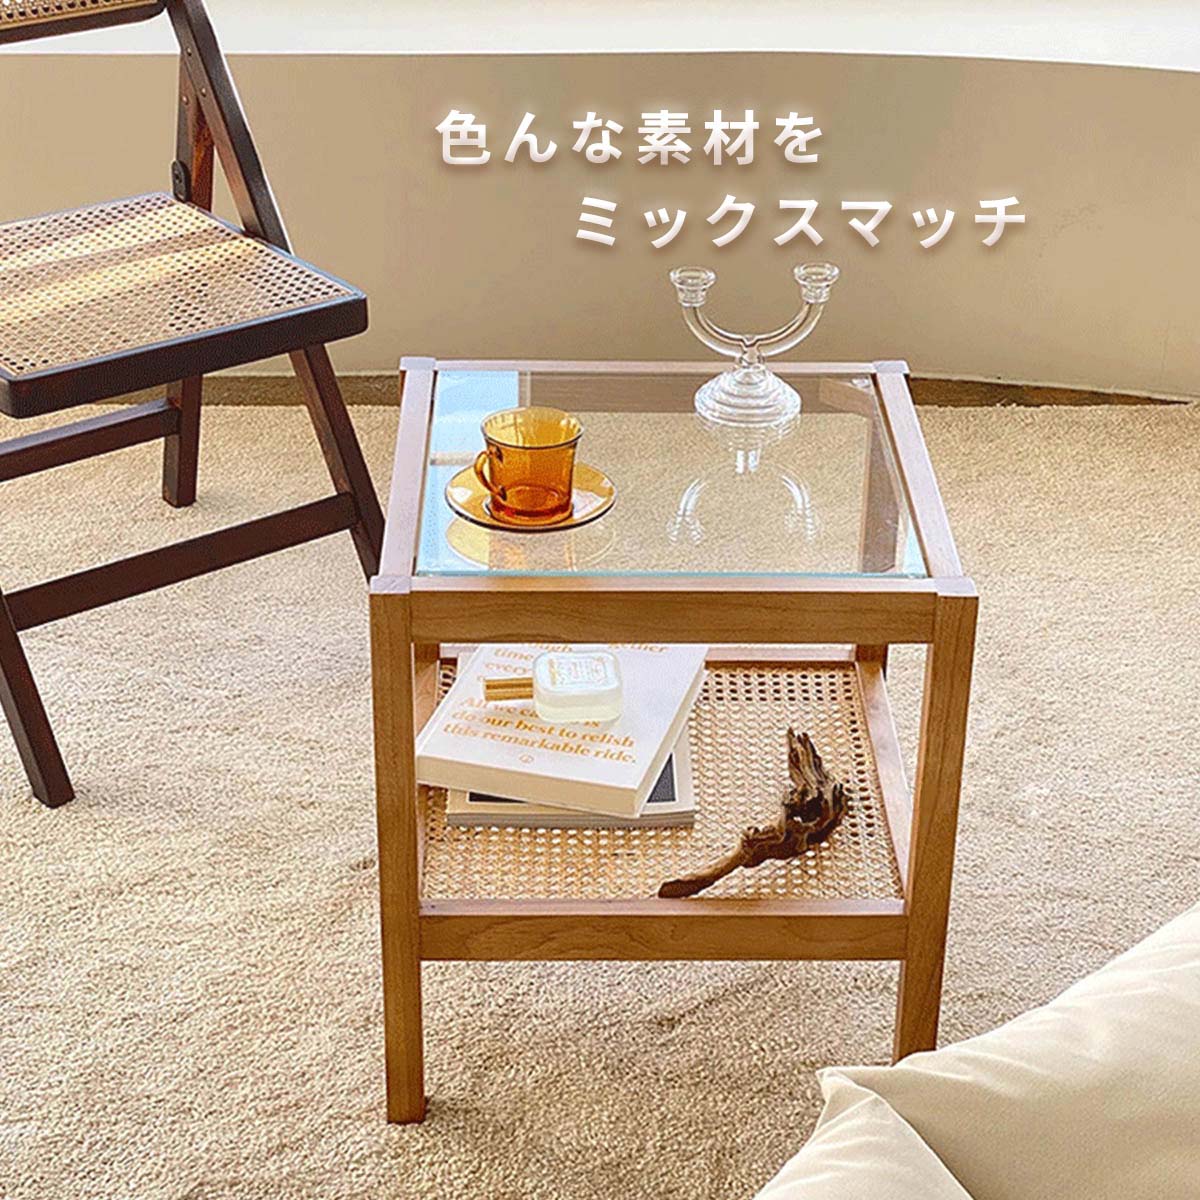 VeroMan サイドテーブル ラタン コヒーテーブル 籐 編み 木製 ガラス